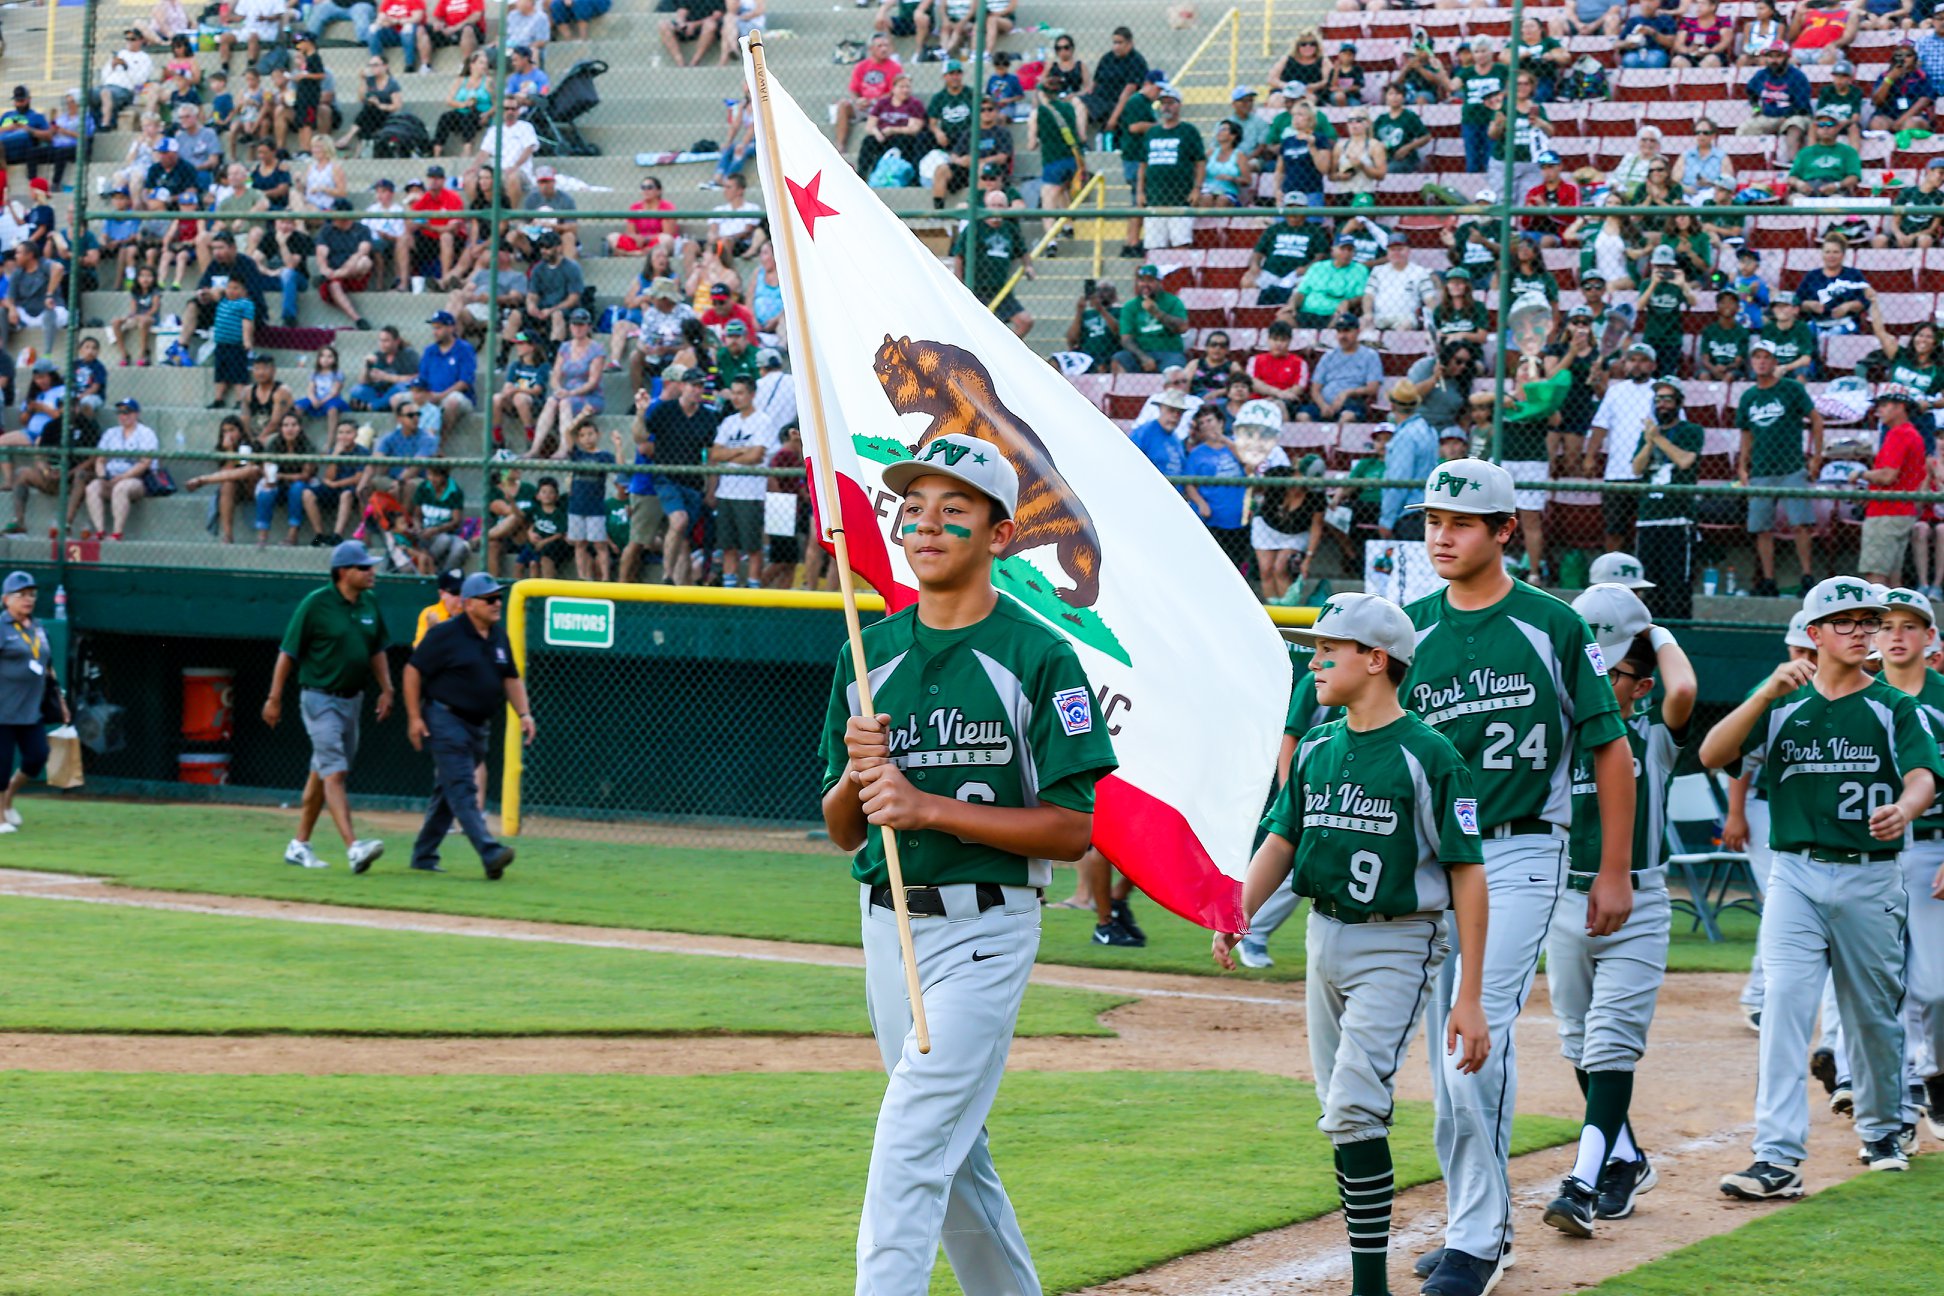 San Bernardino welcomes Little League teams for West Region